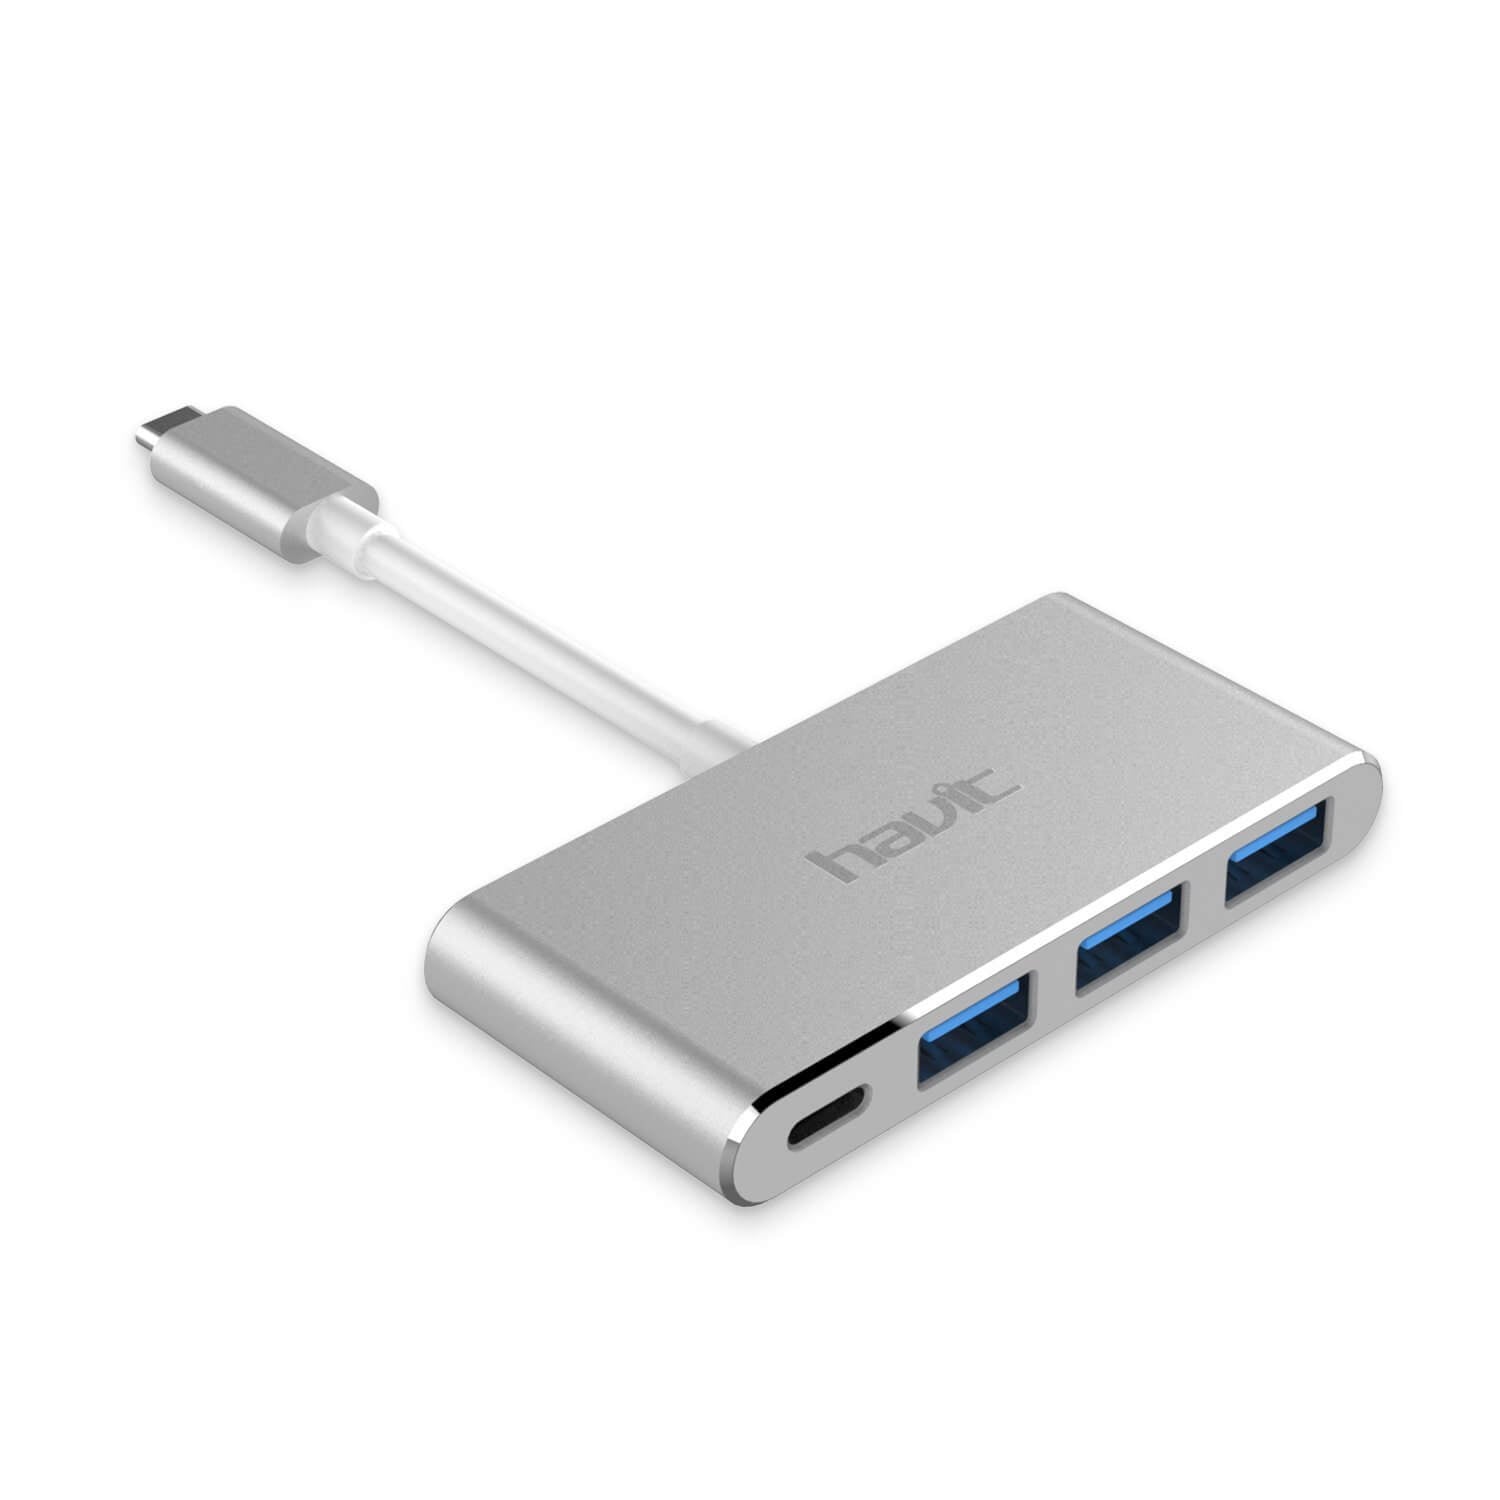 HAVIT HV-TPC69 USB-C Extender Hub with 3 USB 3.0 Ports & 1 PD Charging Type-C Port